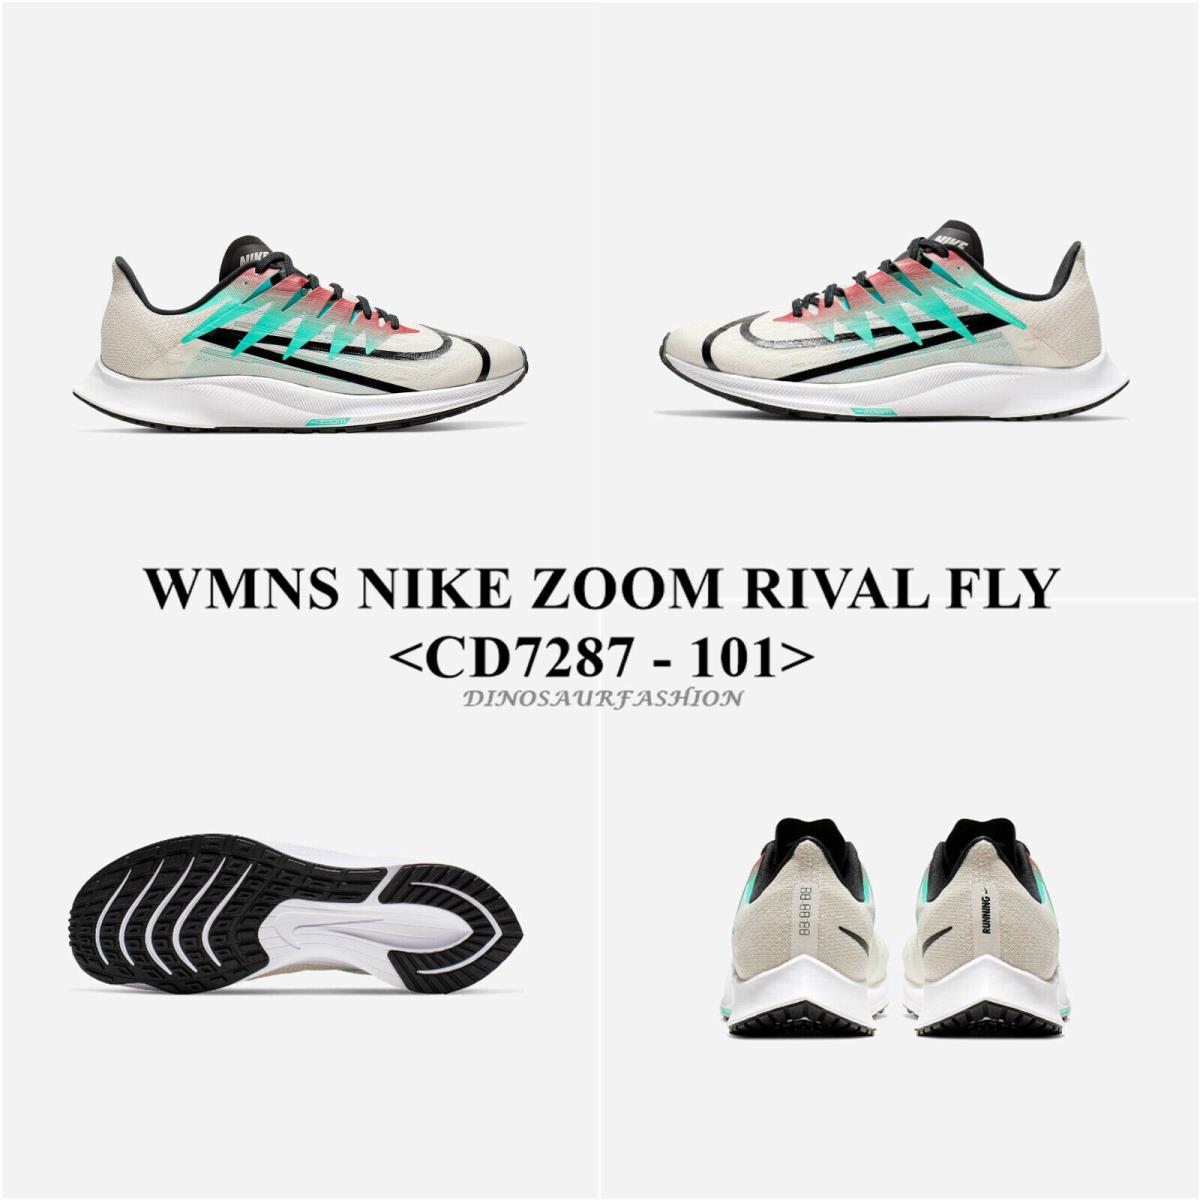 Wmn`s Nike Zoom Rival Fly CD7287 - 101 Women`s Running/sneaker Shoes W Box - PALE IVORY/BLACK-HYPER JADE